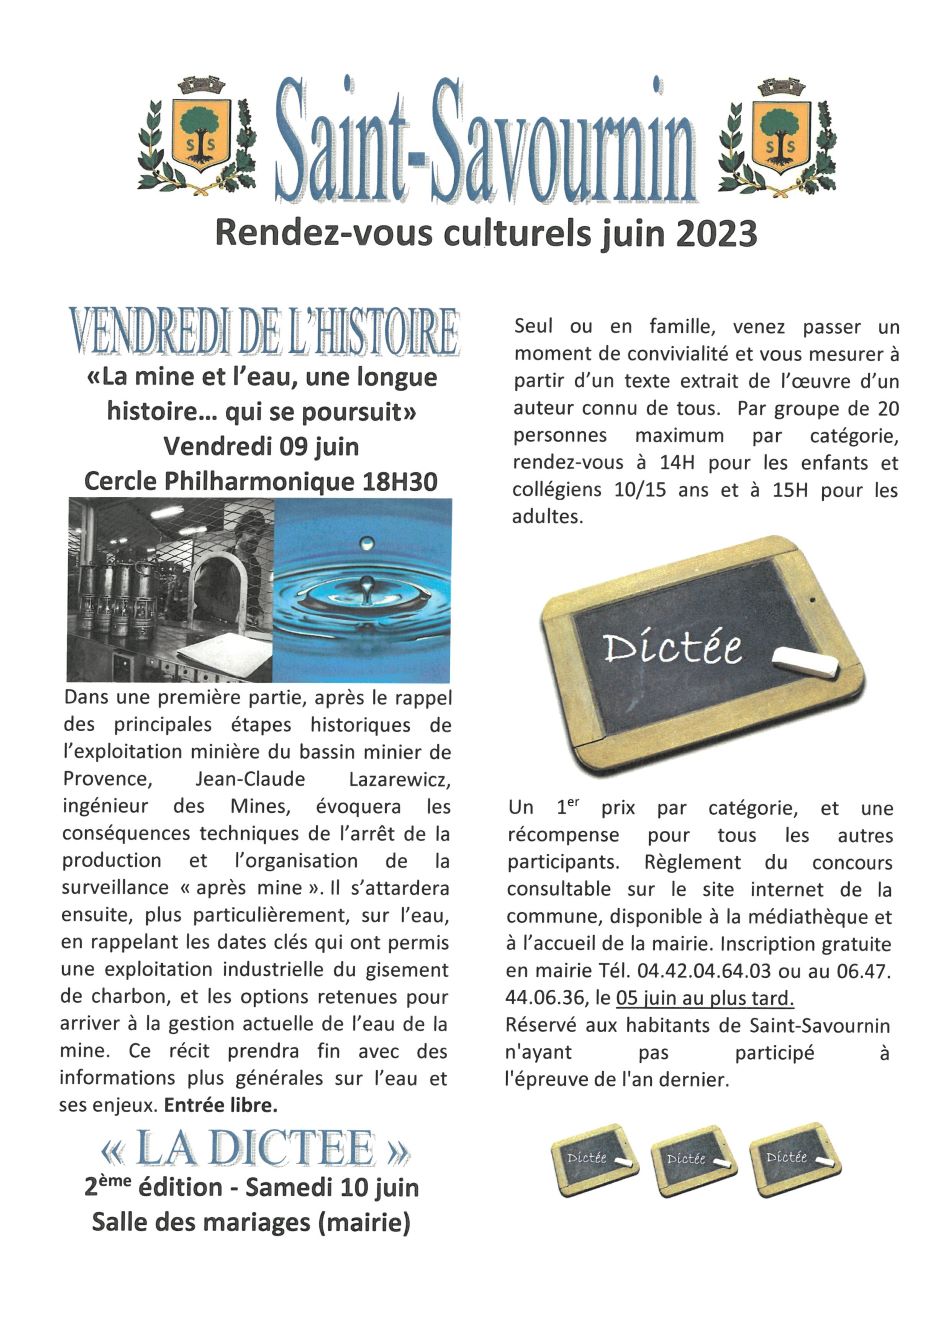 Mairie Saint-Savournin rendez-vous culturels juin 2023